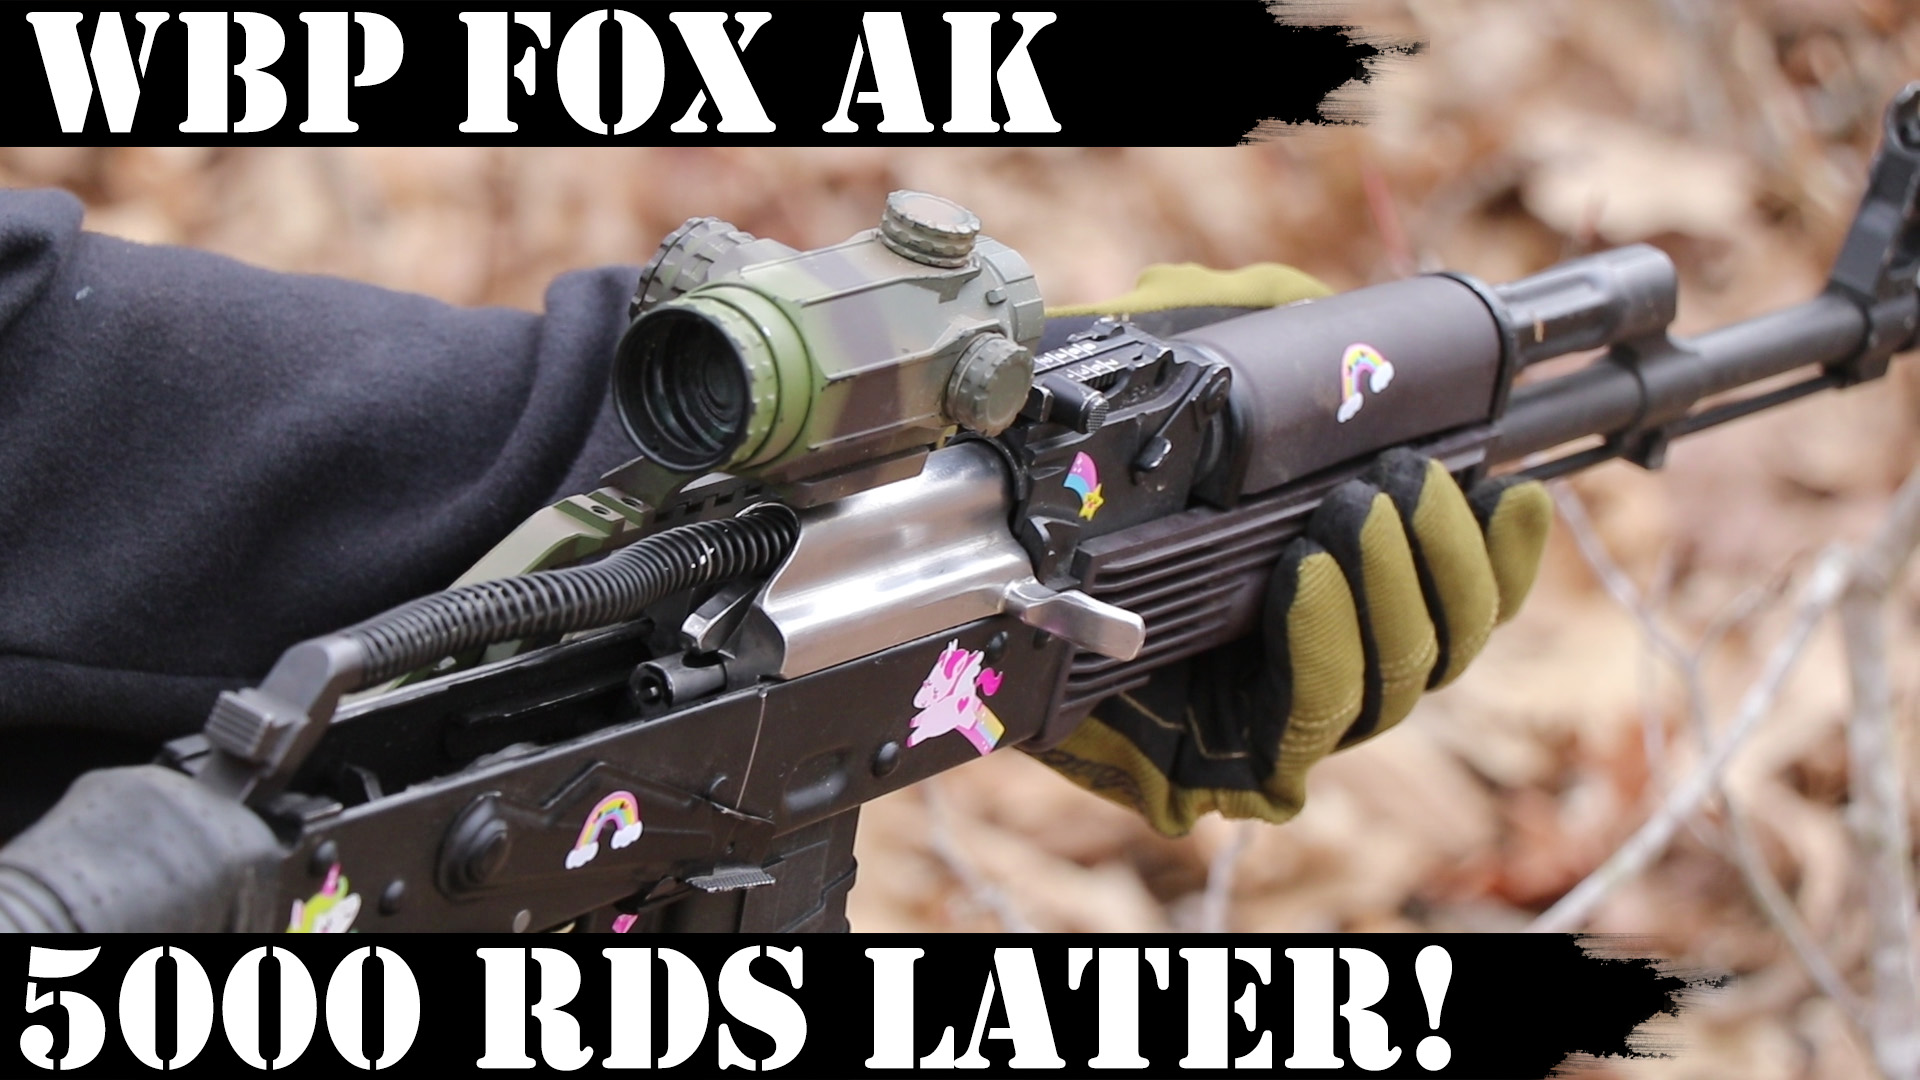 WBP Fox AK: 5,000 Rds Later!